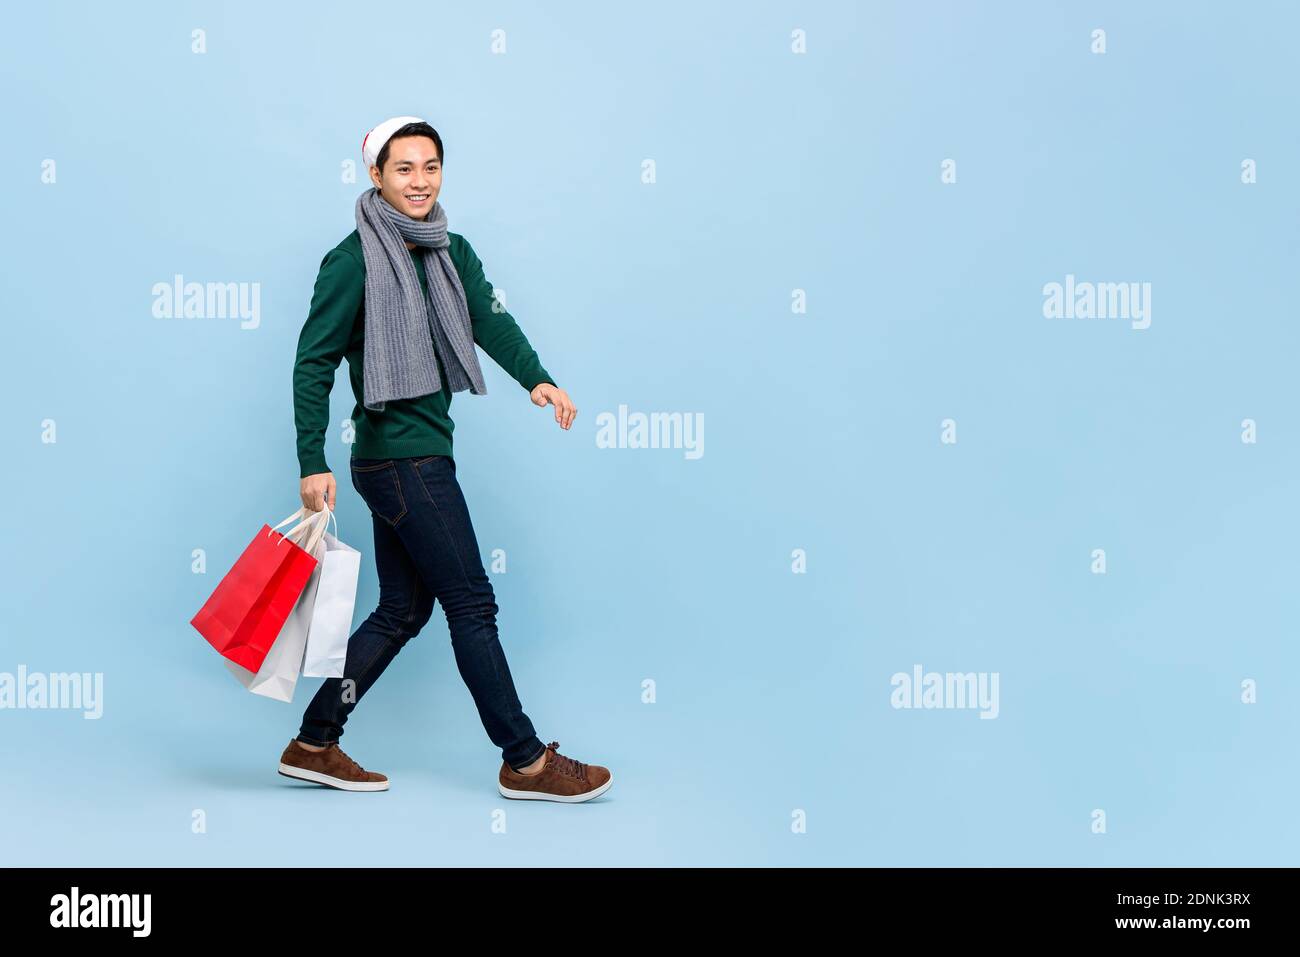 Handsosme uomo asiatico in tema di Natale attrie a piedi e tenere borse per lo shopping in uno spazio da studio blu chiaro con spazio per la copia Foto Stock